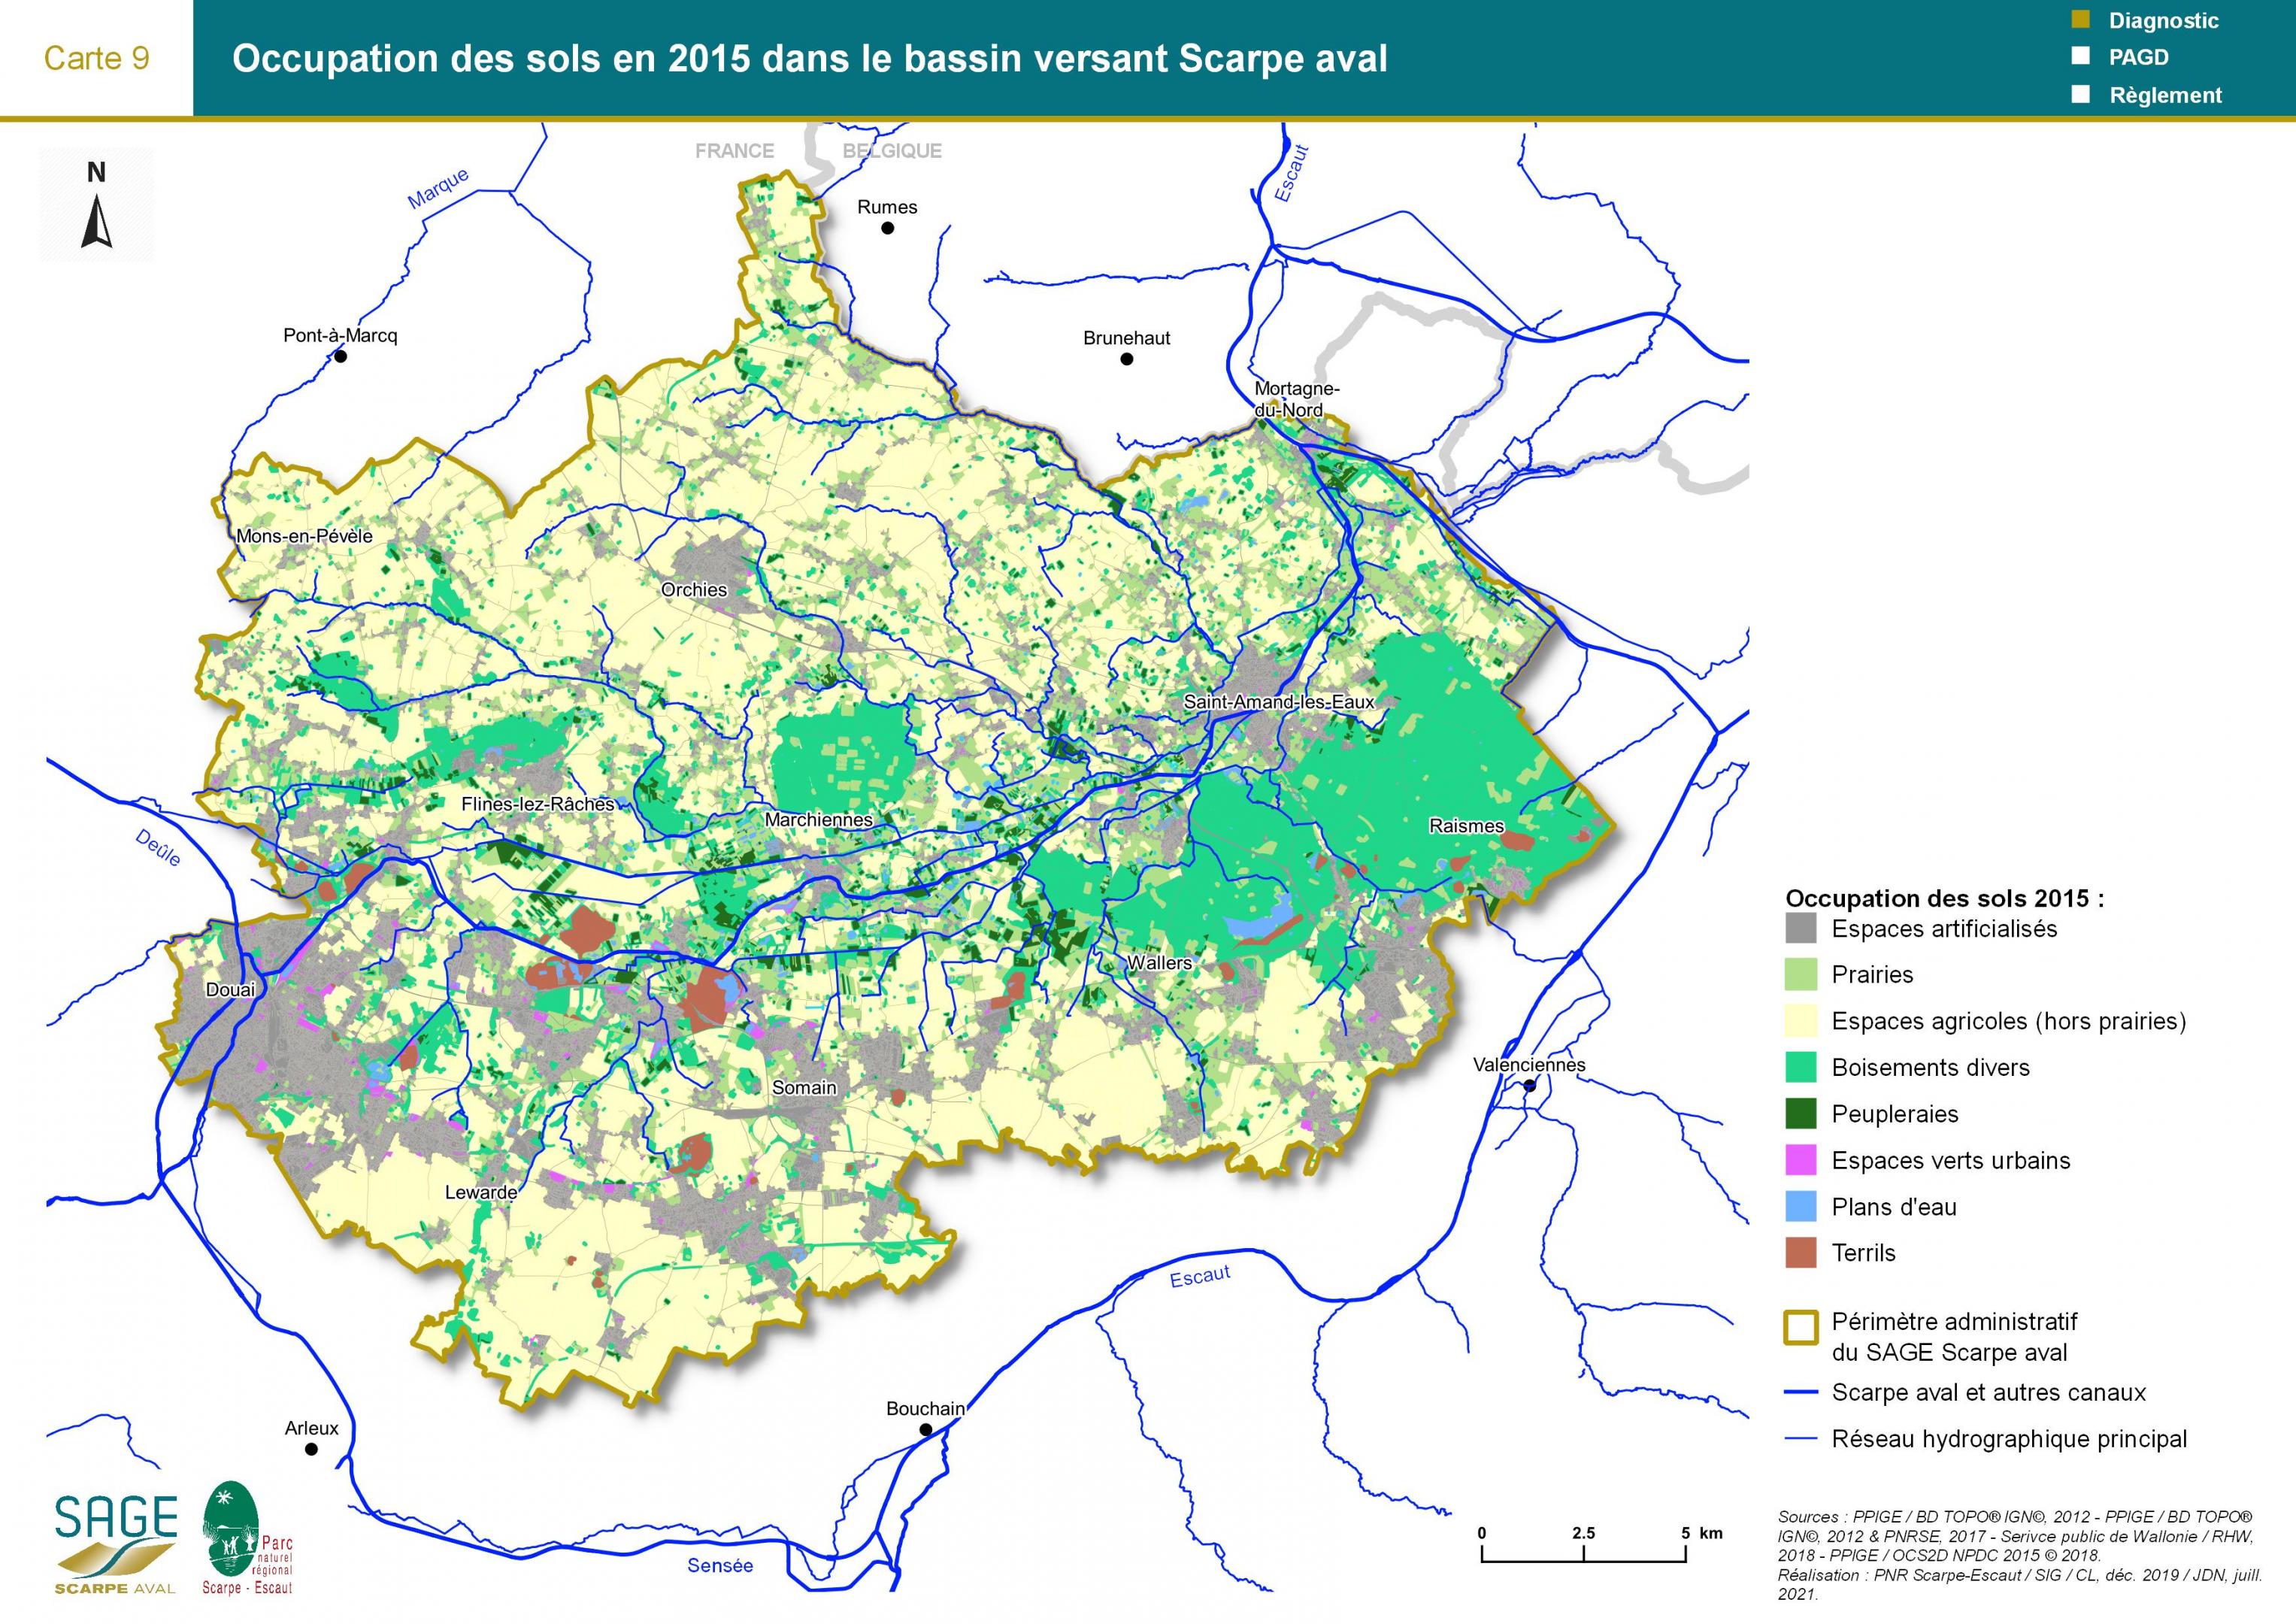 Etat des lieux - Carte 9 : Occupation des sols en 2015 dans le bassin versant Scarpe aval